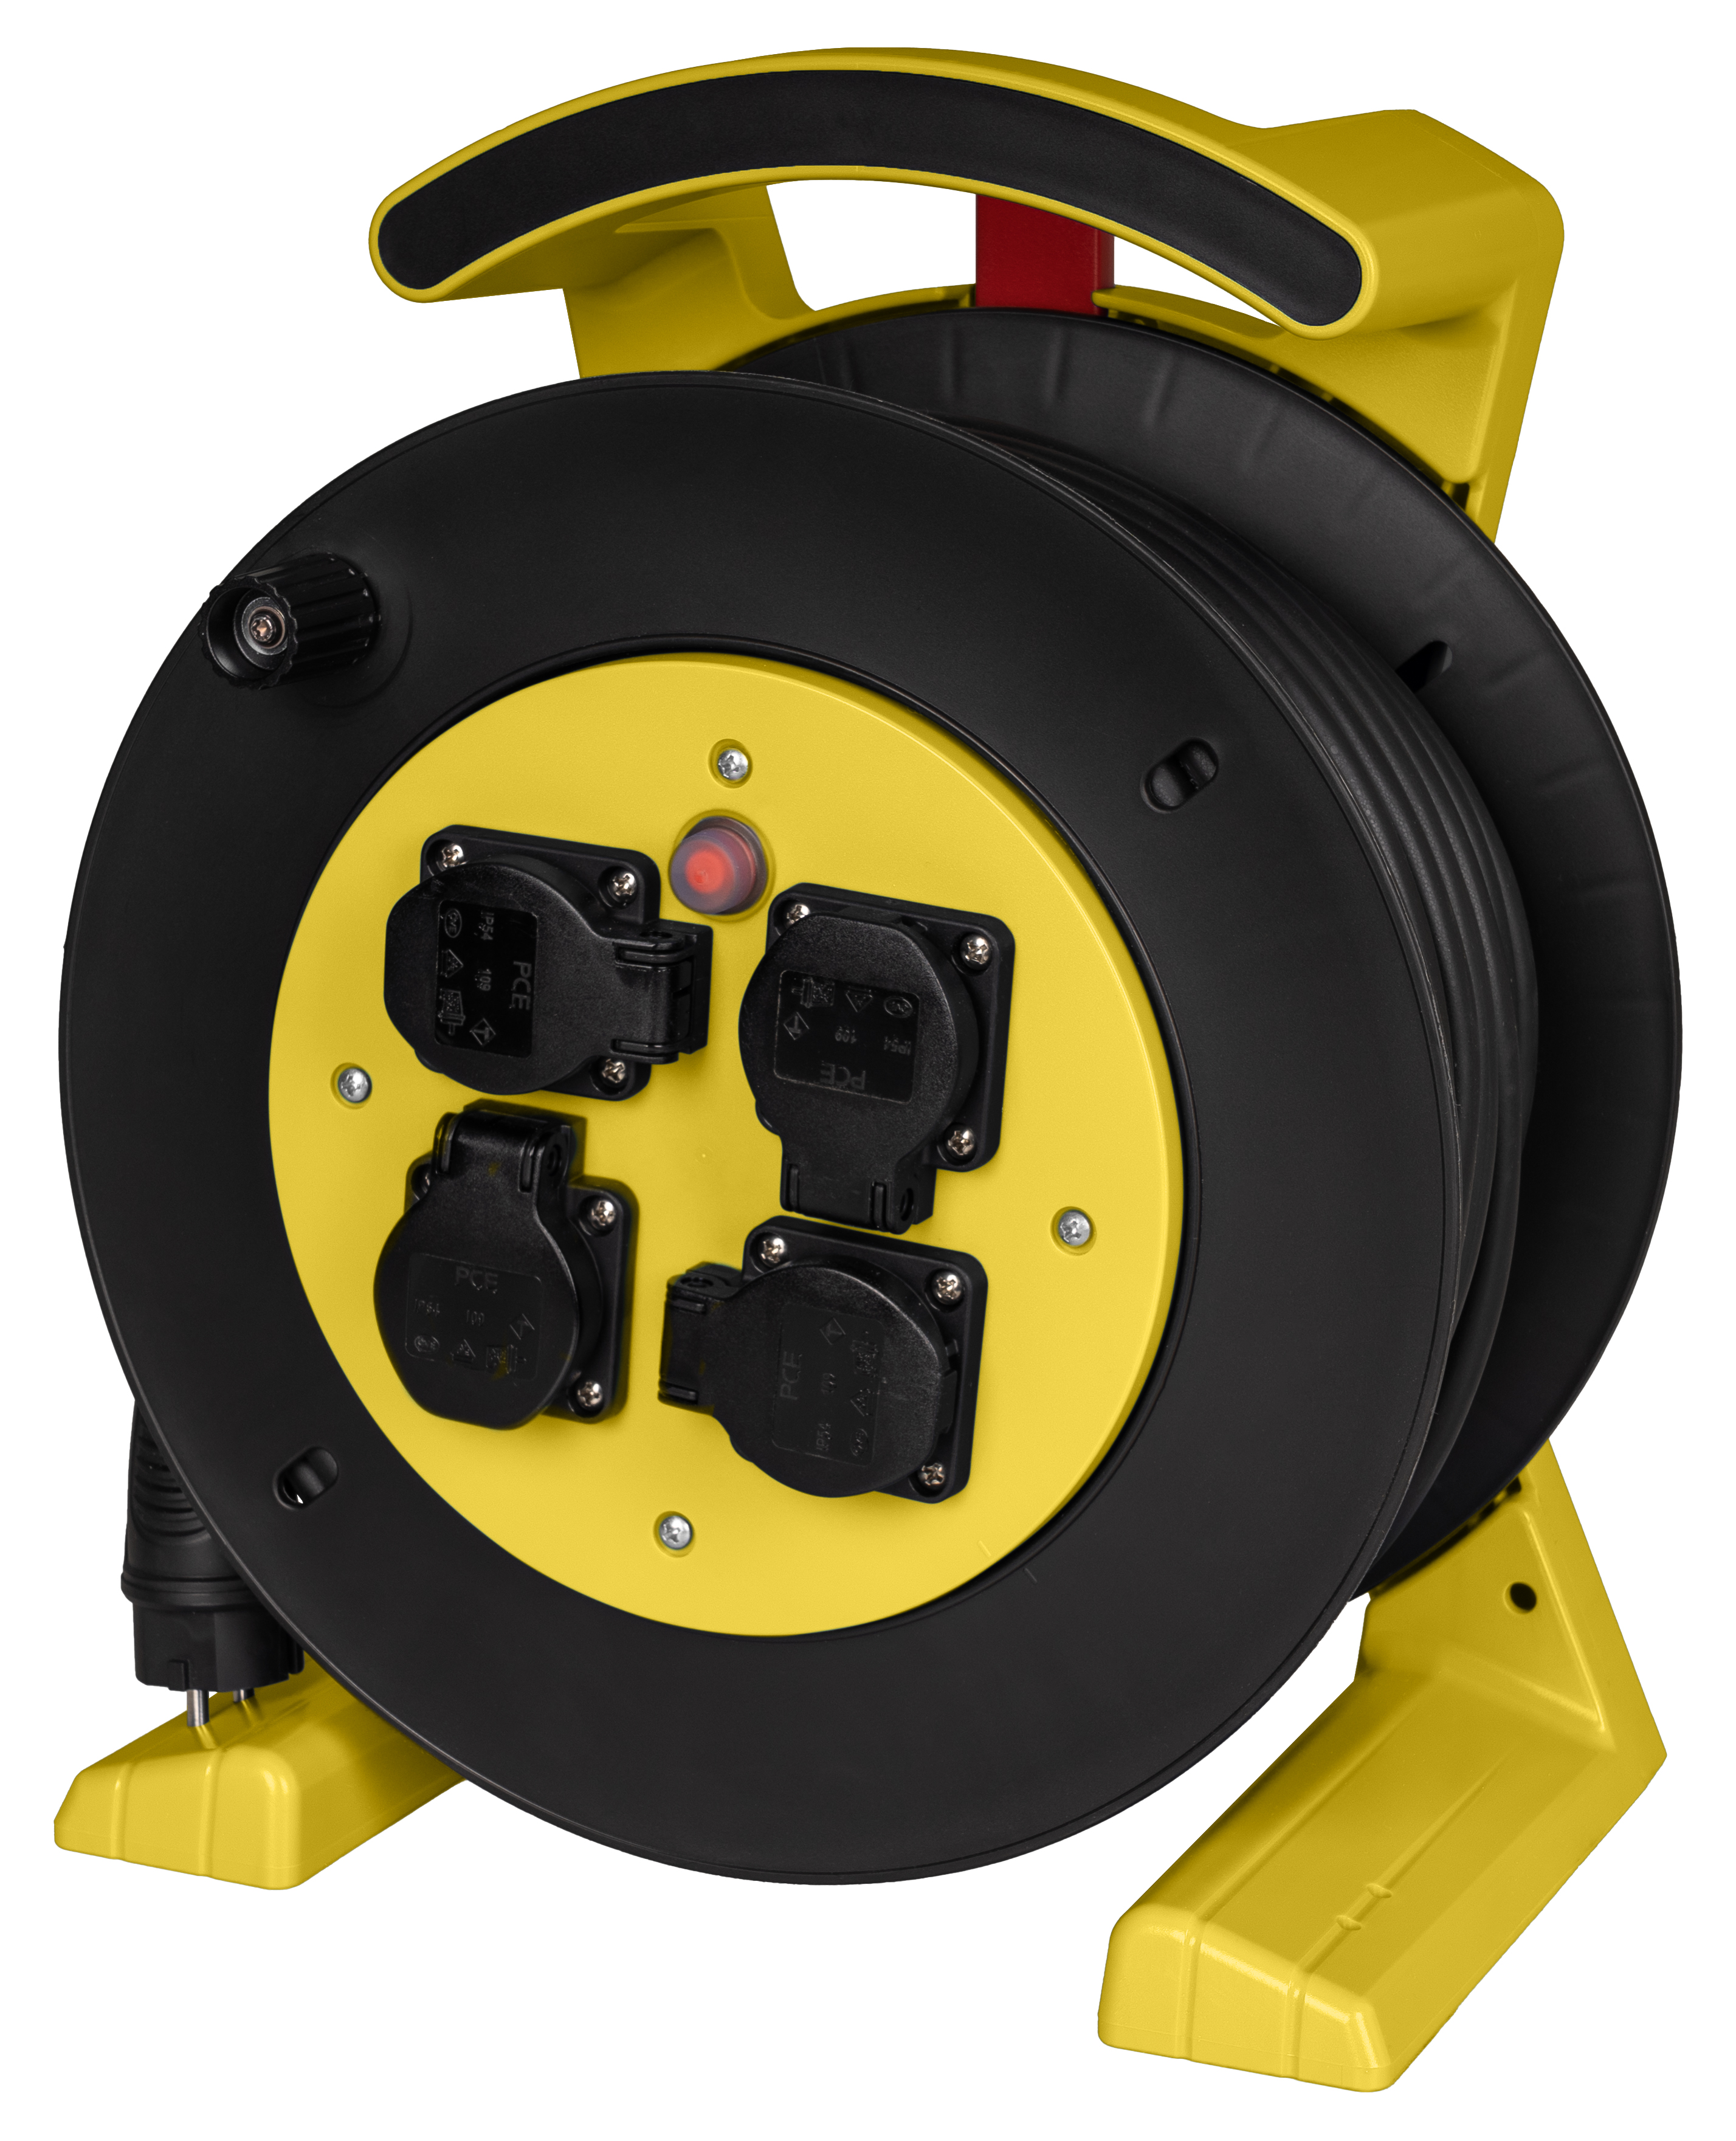 Kabeltrommel gelb-schwarz, 4 x Schutzkontakt-Steckdose, H07RN-F 3 G 2,5 mm², 25 m JUMBO L 2.0